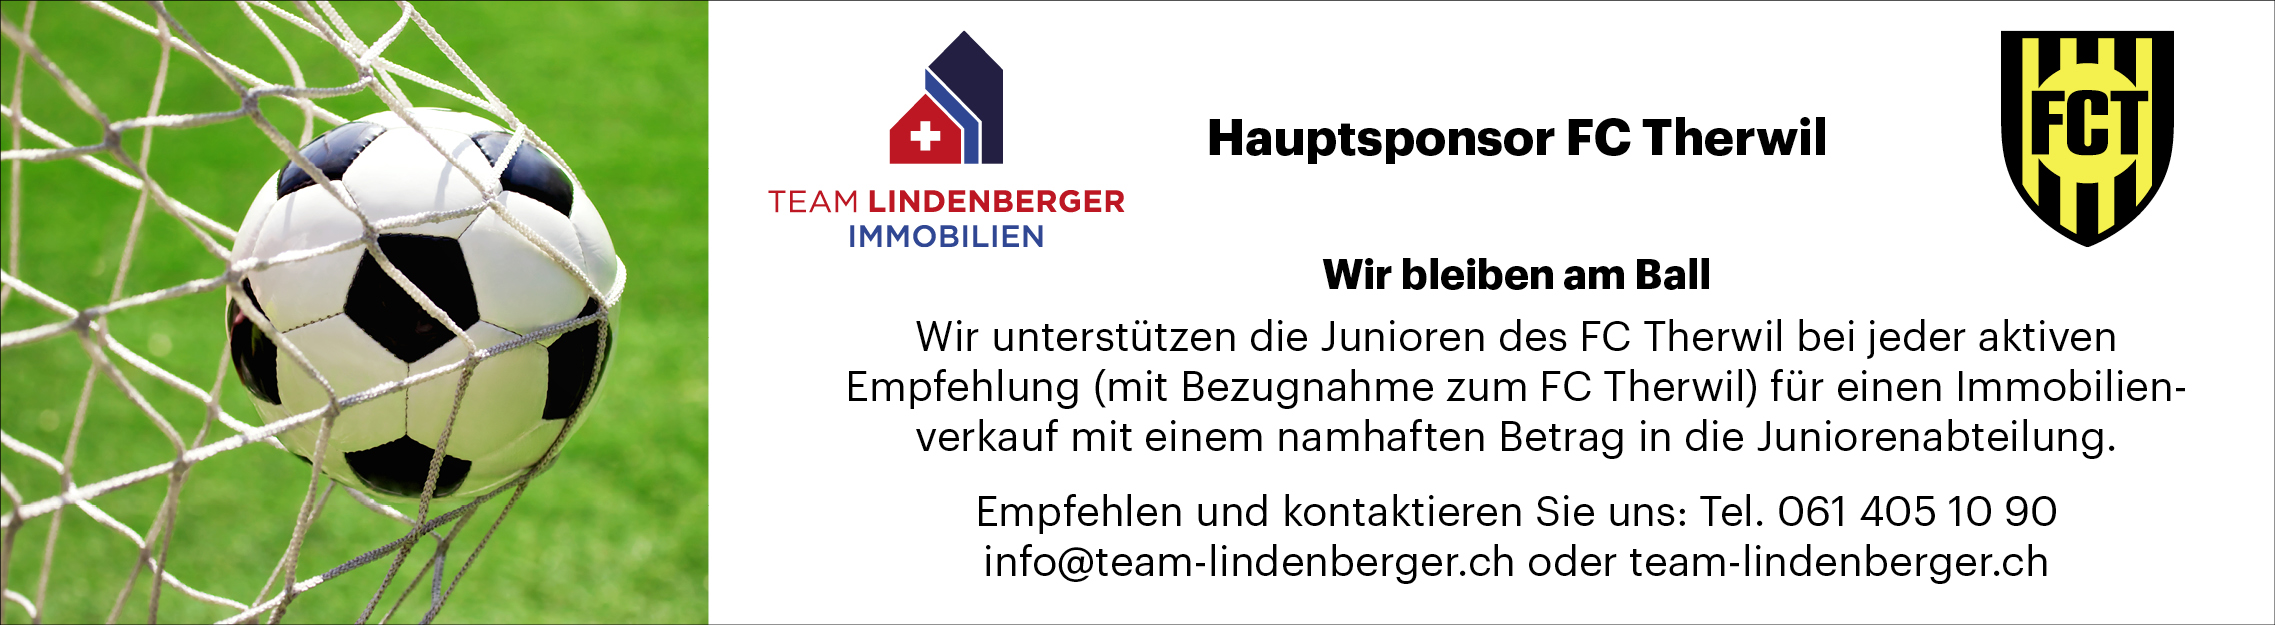 Team Lindenberger Hauptsponsor FC Therwil